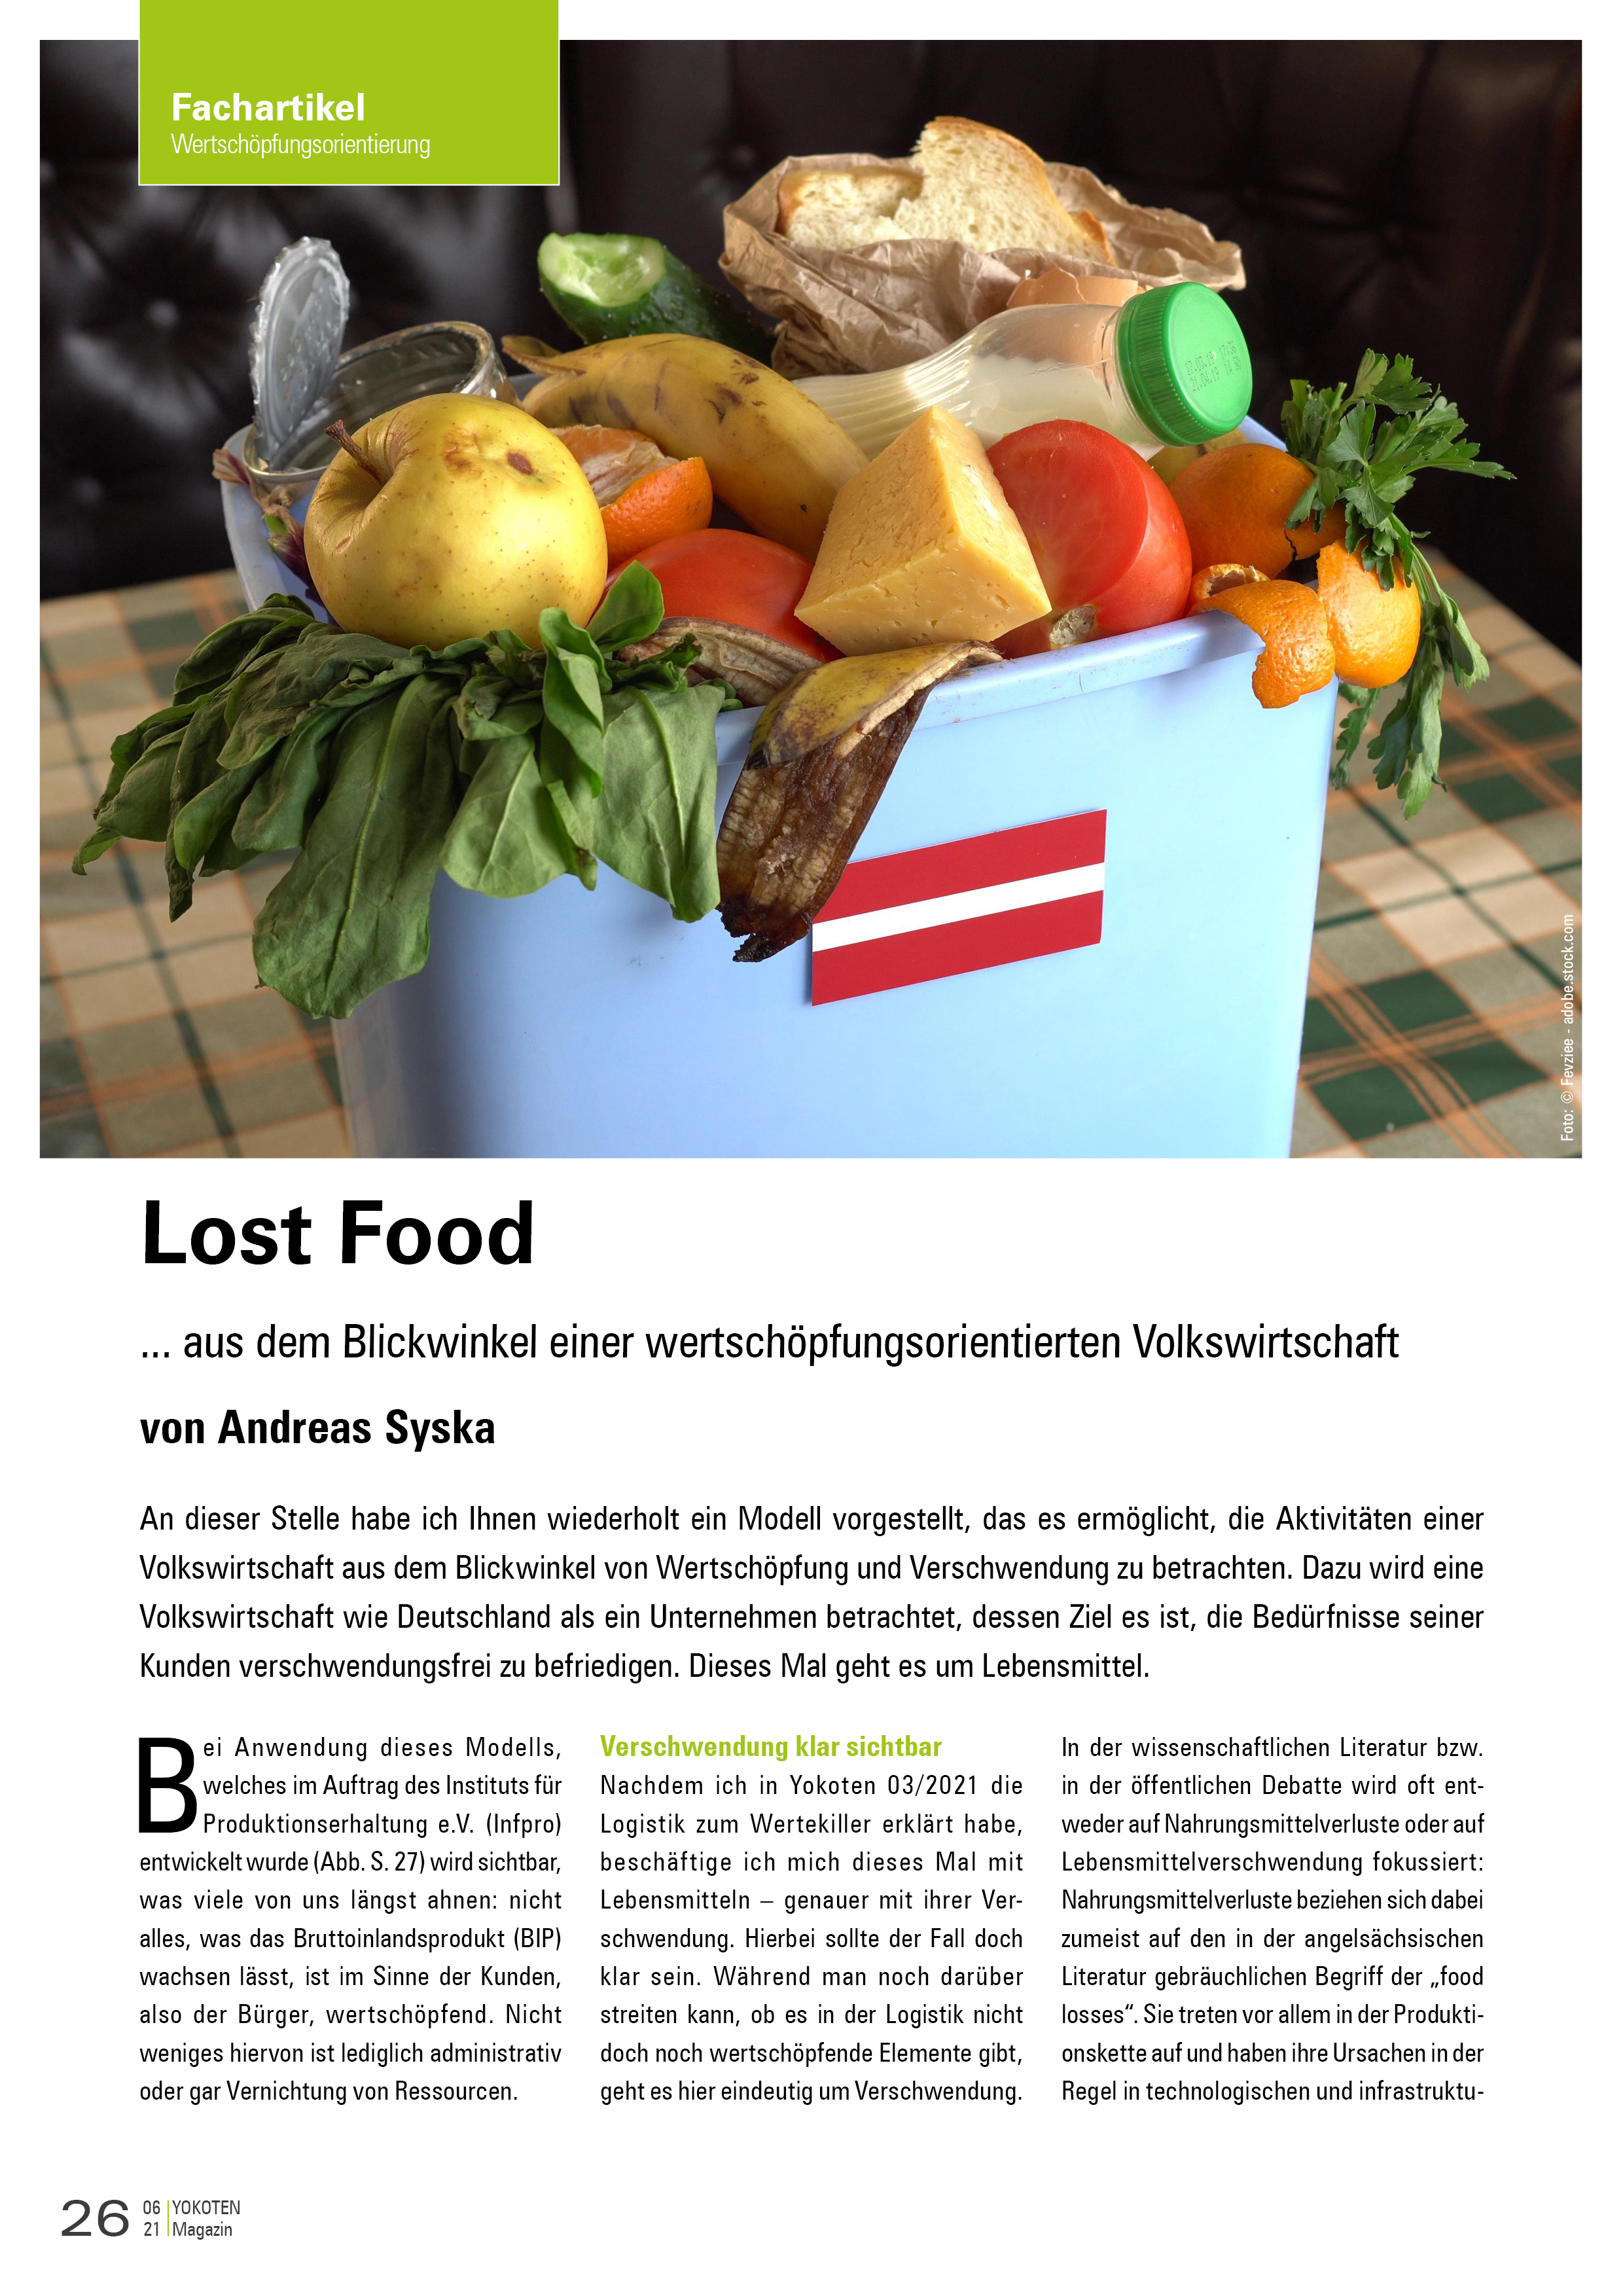 YOKOTEN-Artikel: Lost Food